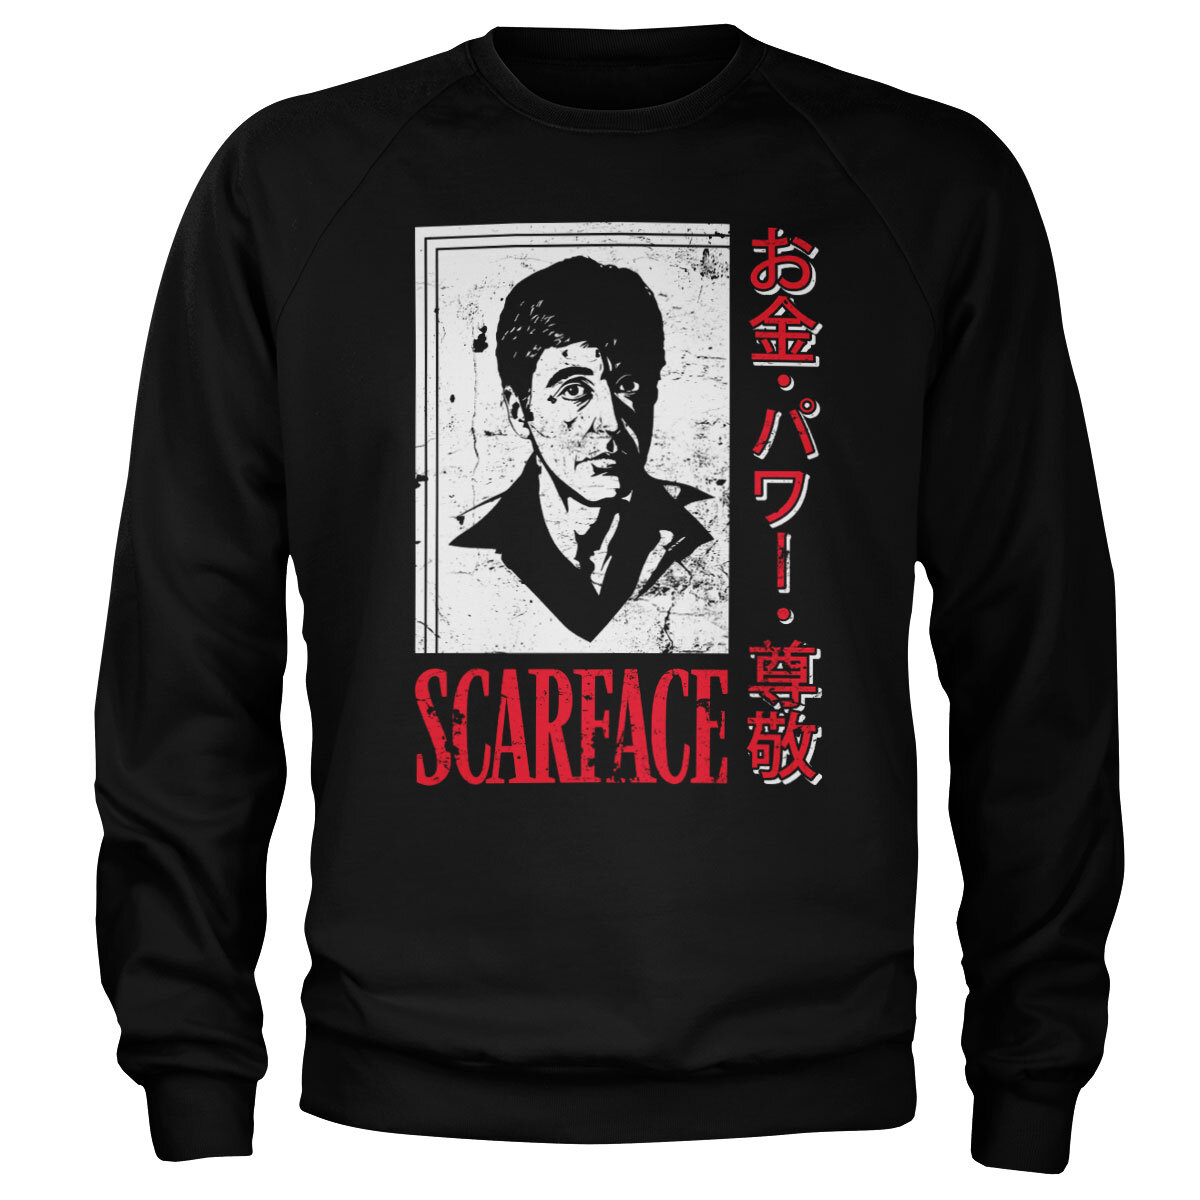 Scarface - Japanese Sweatshirt